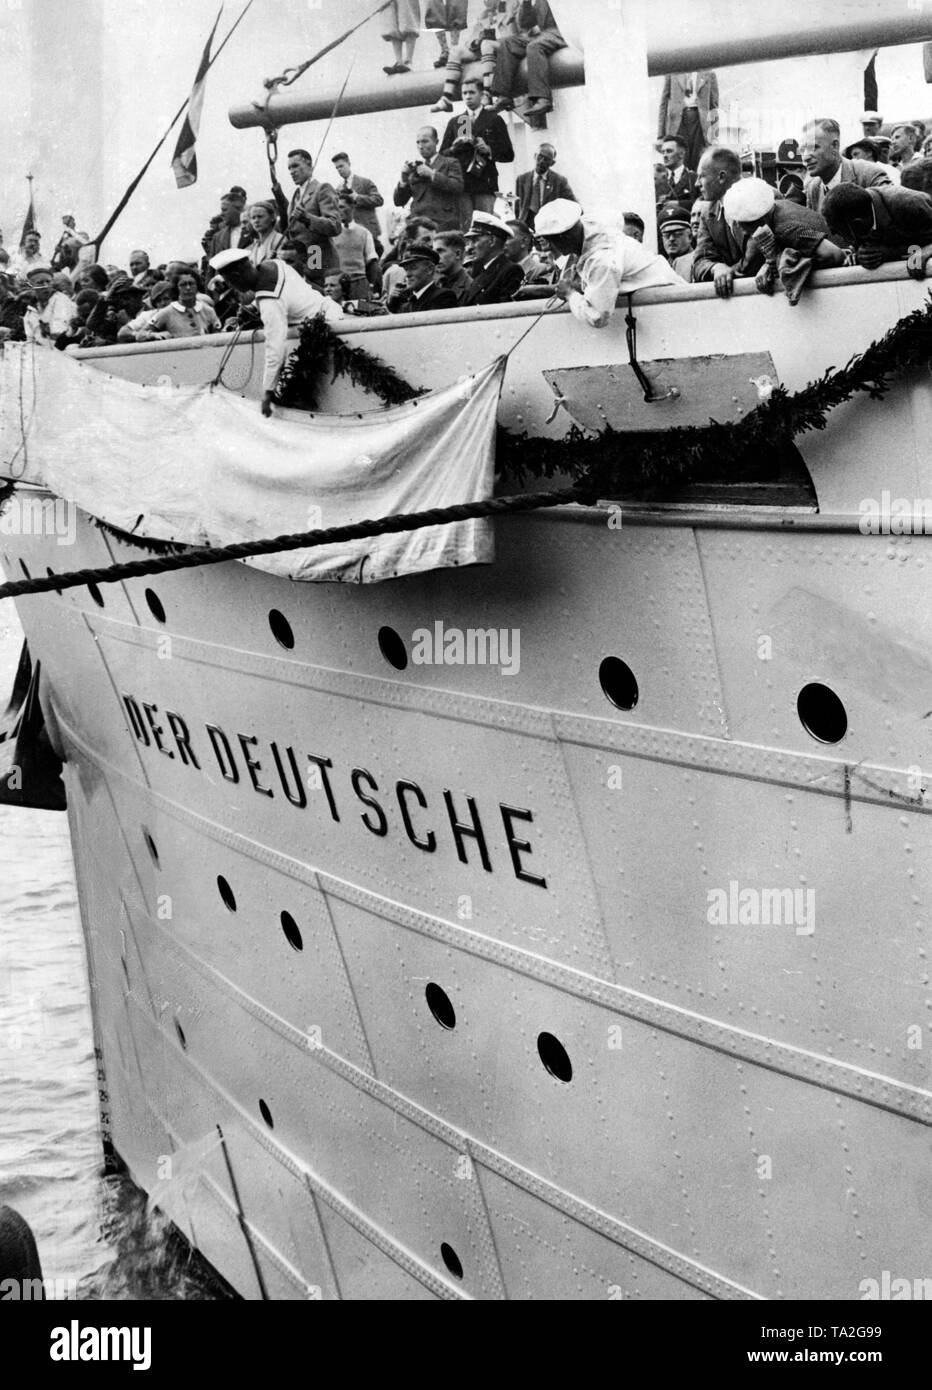 La nuova etichetta del nome del passeggero sistema di cottura a vapore "Sierra Morena' del Nord tedesco Lloyd viene svelata. Di passeggeri che la nave è ora chiamato 'Der Deutsche' sulla fine dell'organizzazione nazista "Kraft durch Freude". Foto Stock